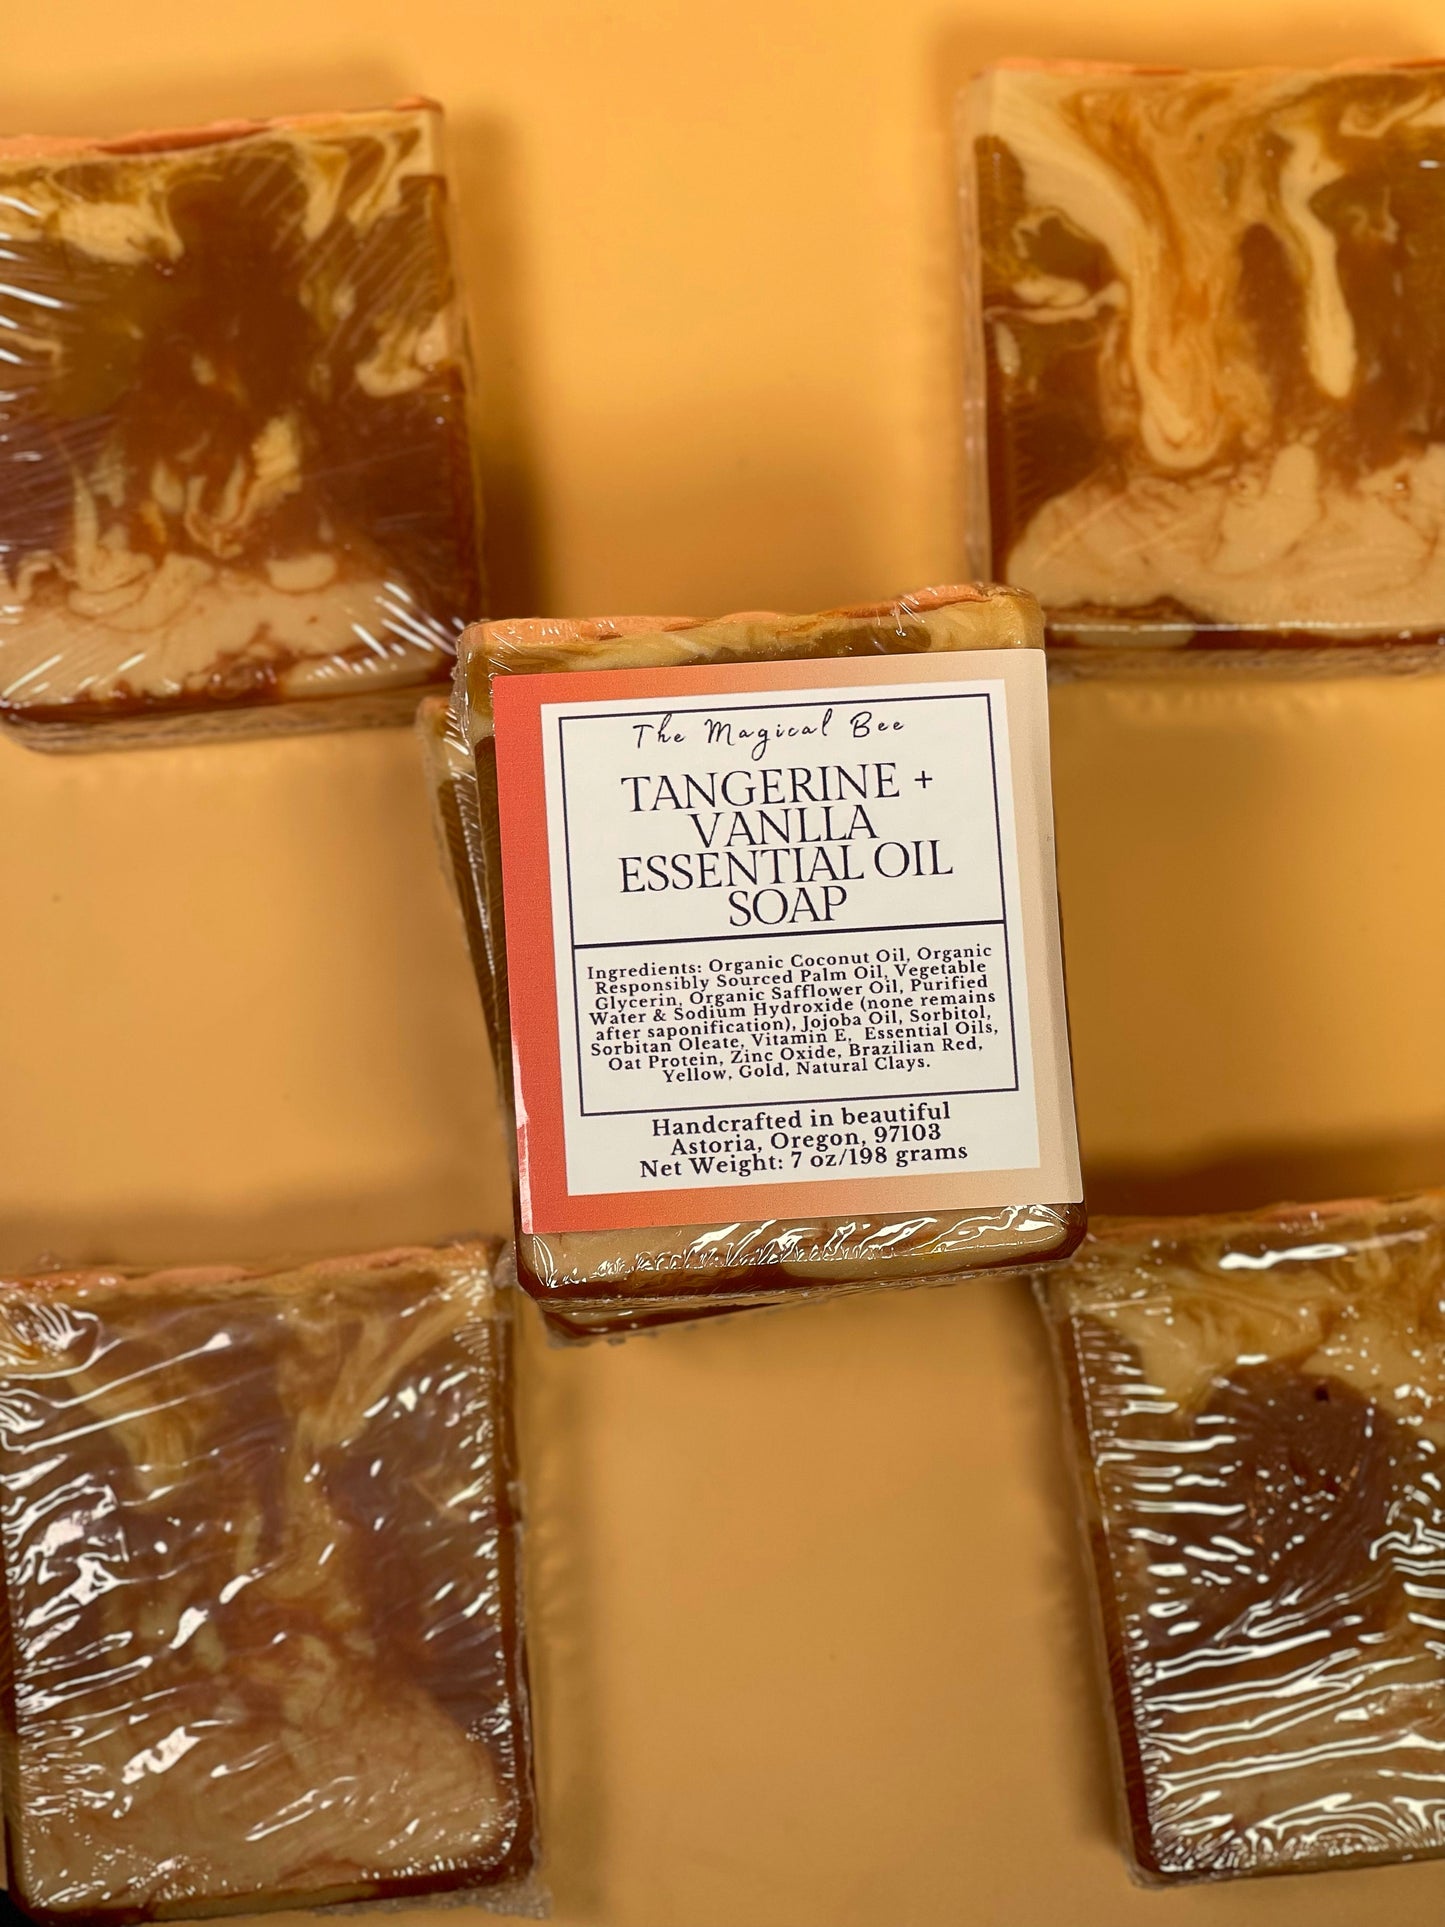 Tangerine + Vanilla Essential Oil Soap